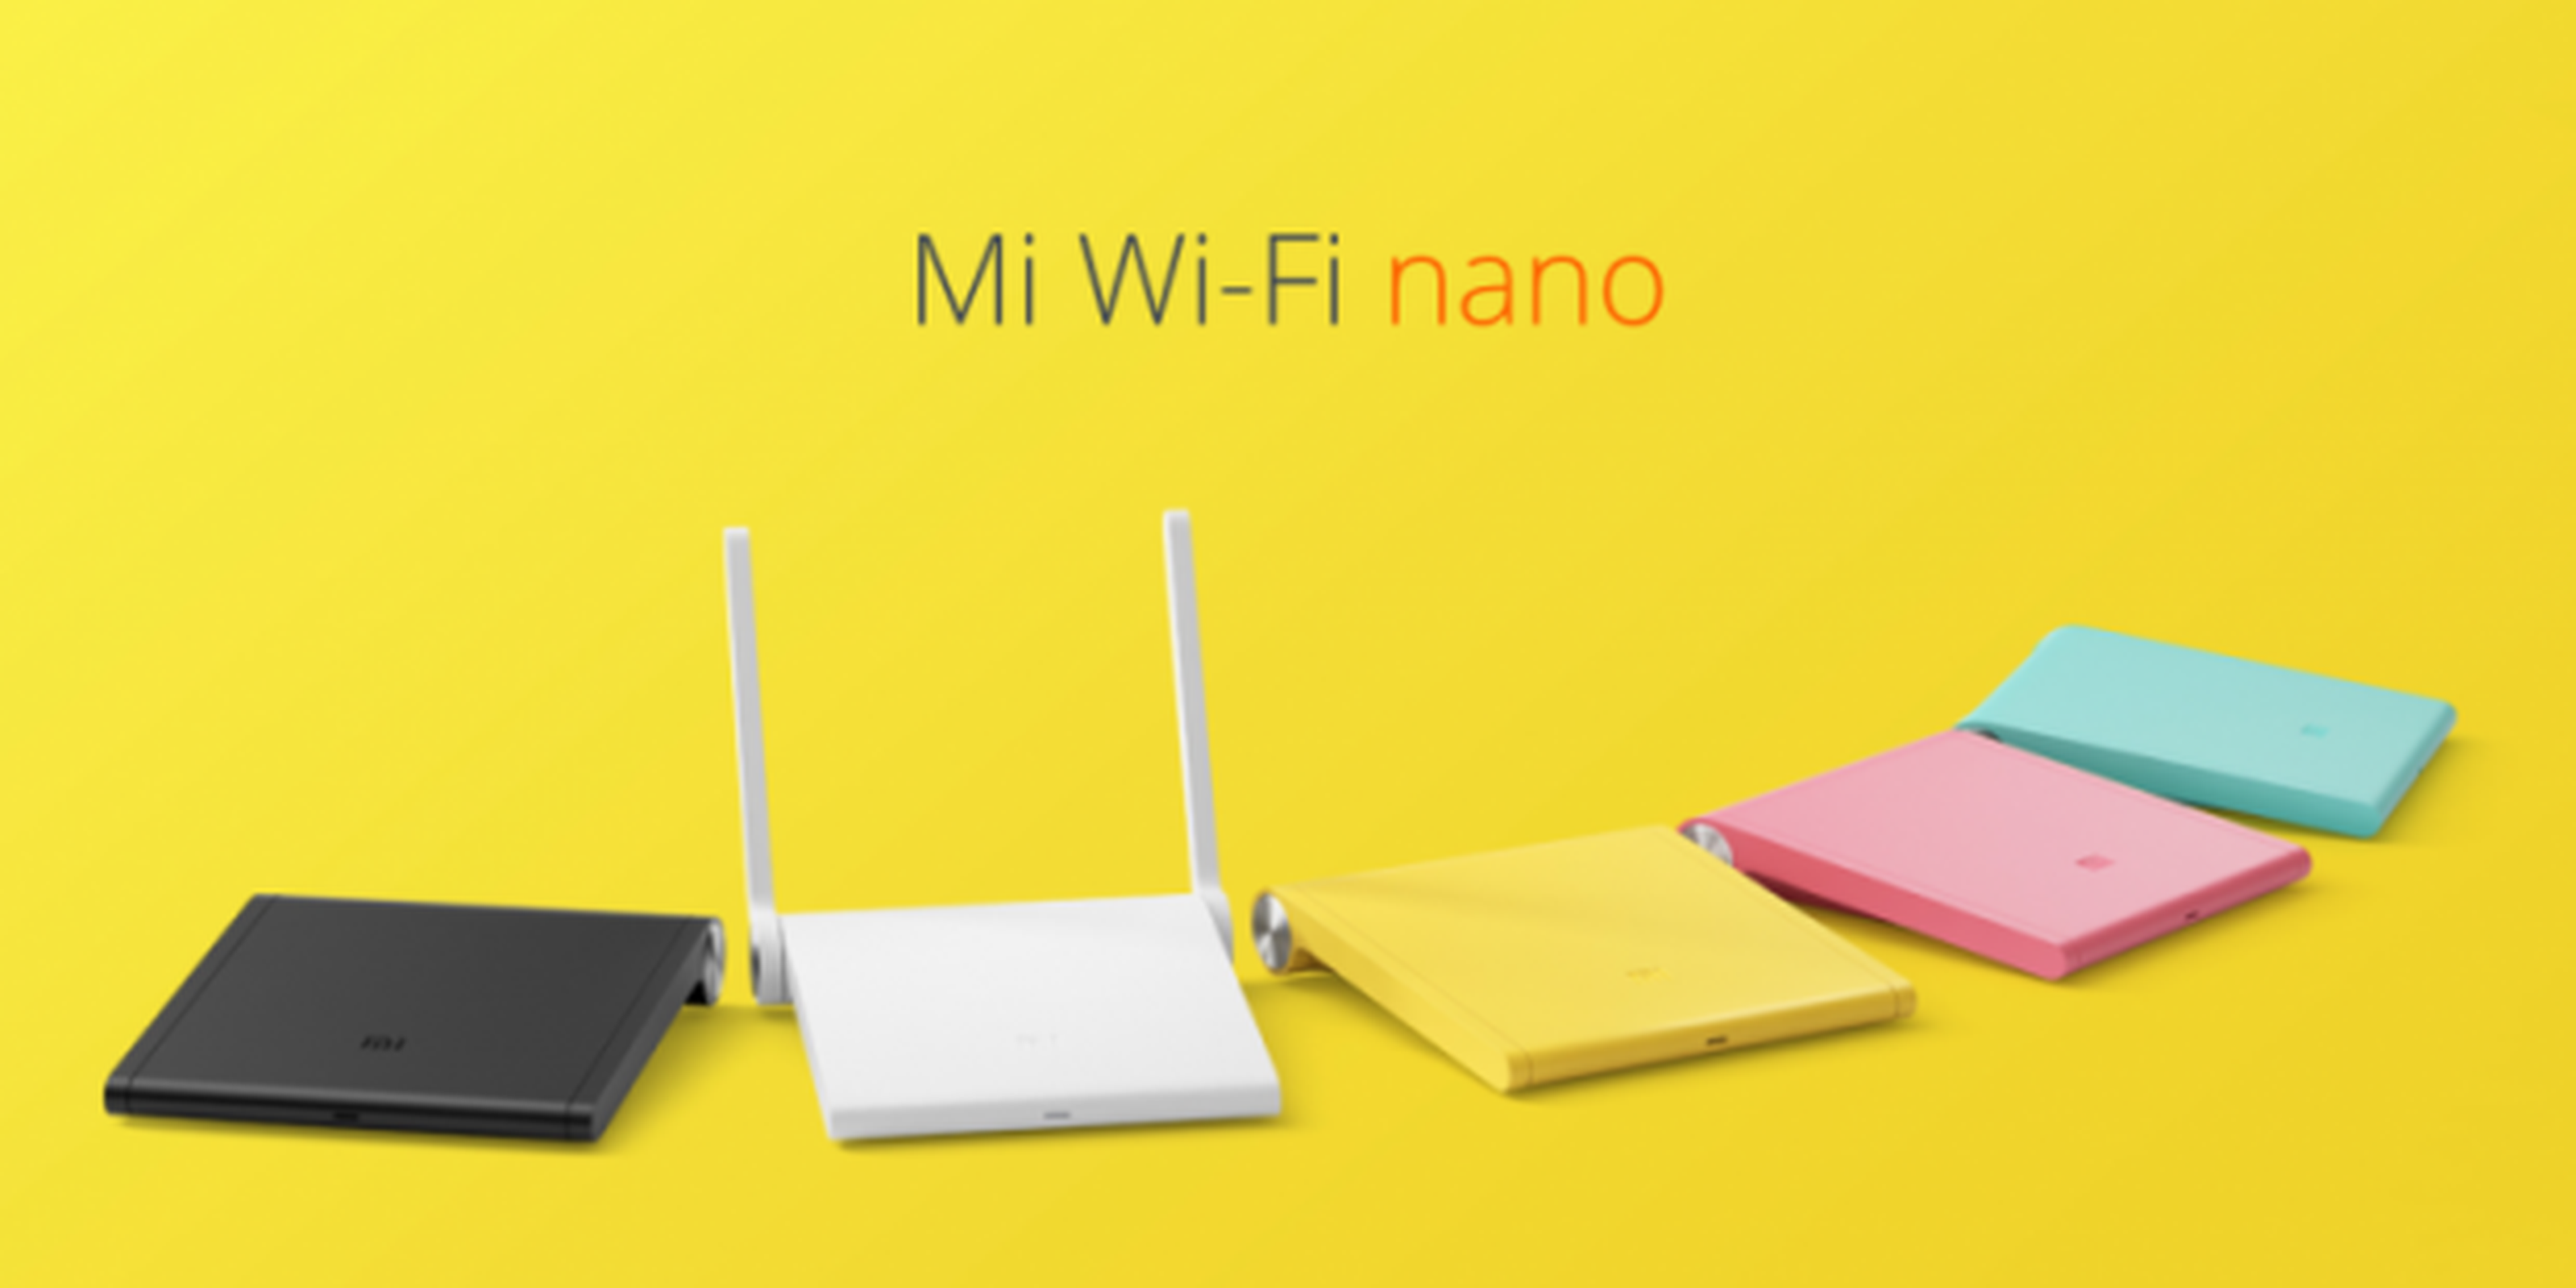 Xiaomi MIUI 7 y Mi Wi-Fi nano, presentados oficialmente